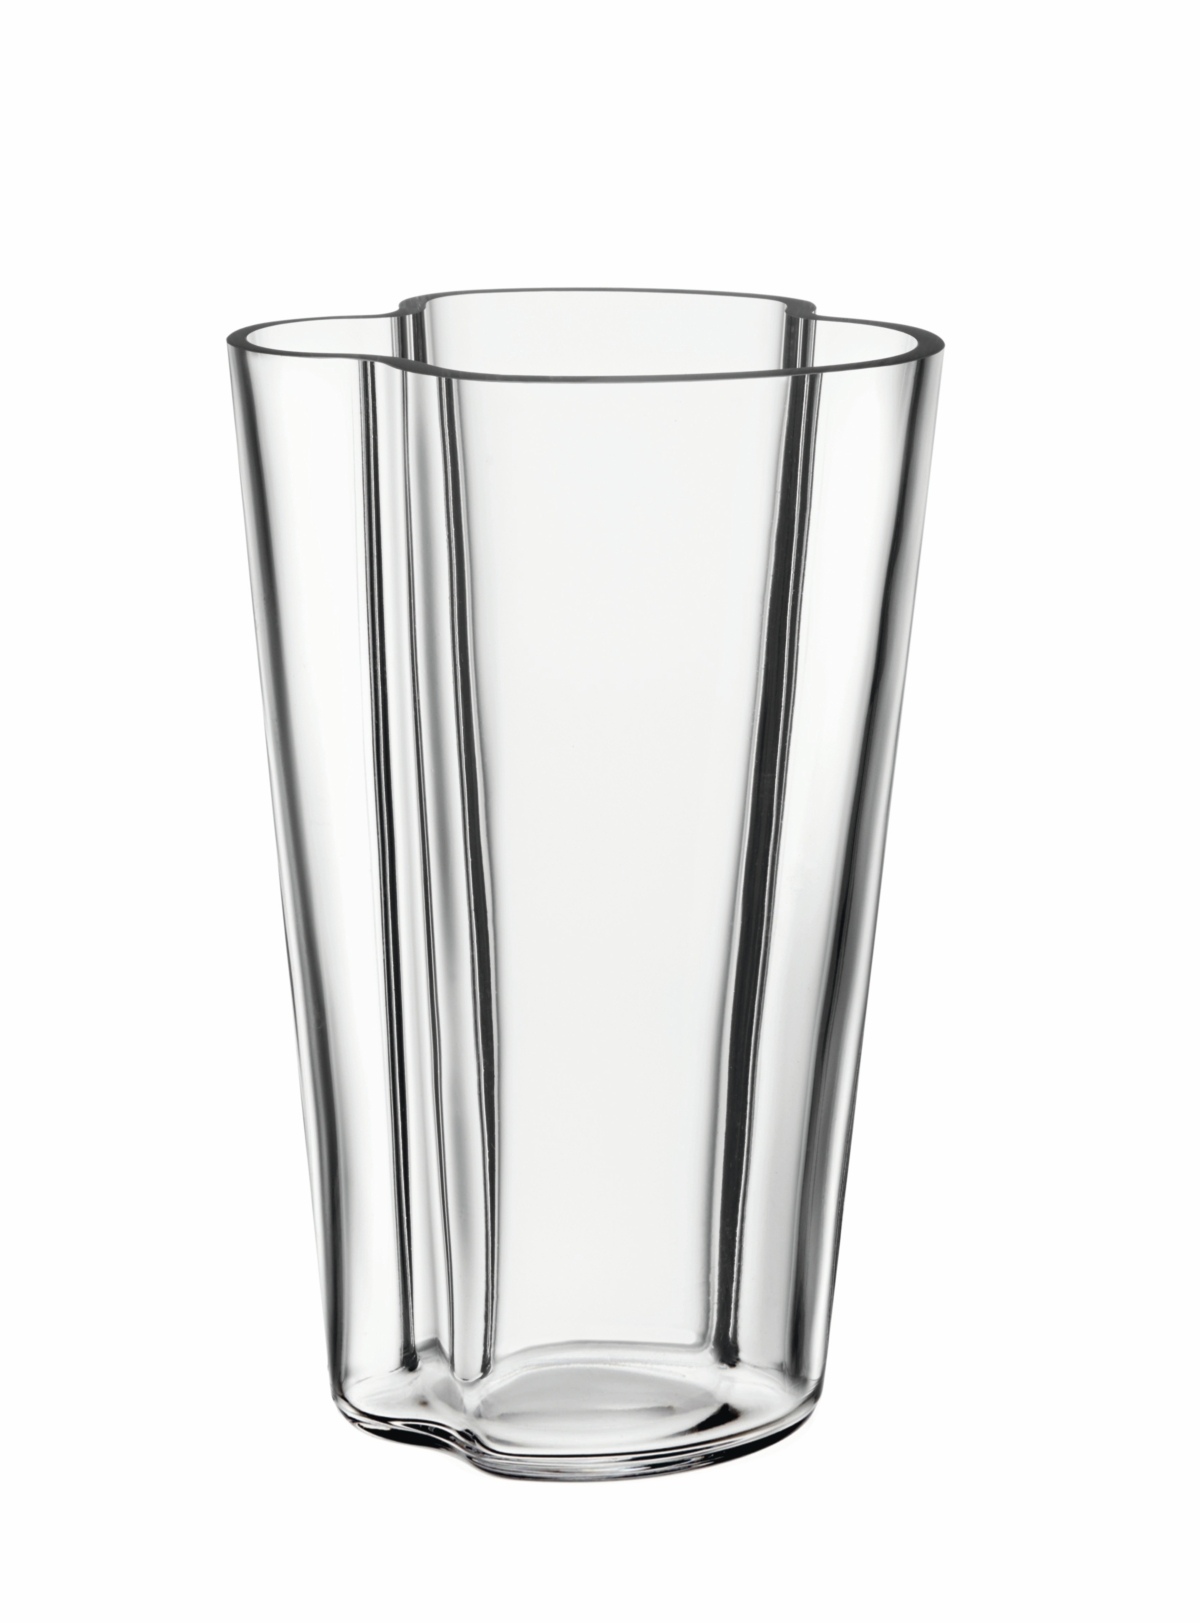 Iittala Alvar Aalto 8.75 Vase